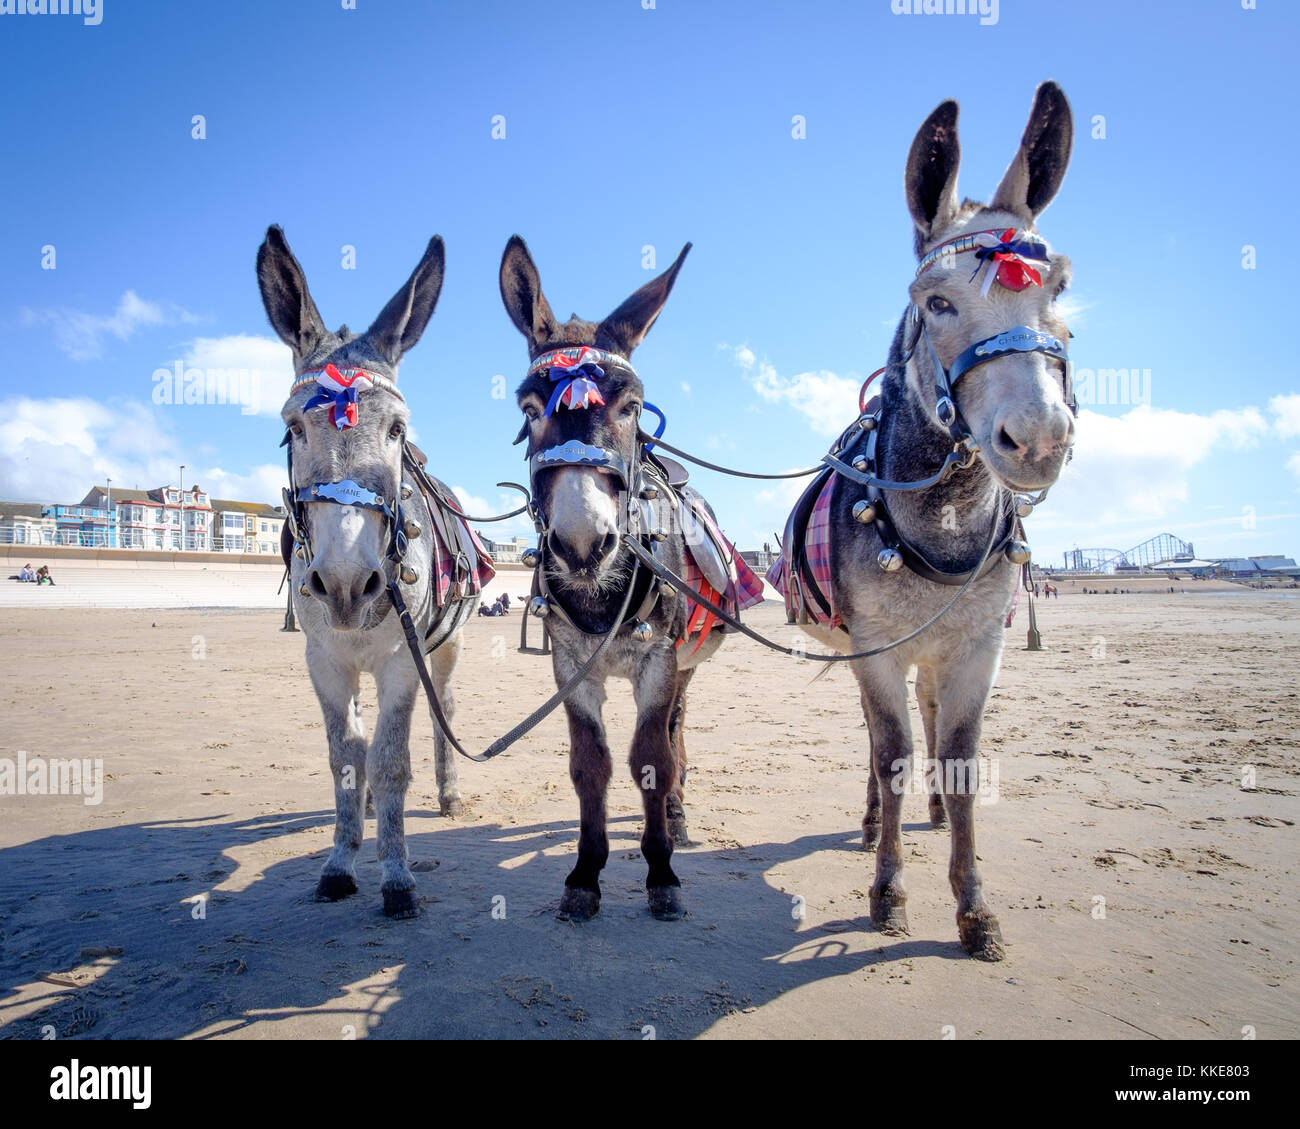 Drei Esel am Strand in den Badeort Blackpool, North West England, wachsam und aufmerksam, ohne Reiter, an einem schönen sonnigen Tag im Sommer 2017. Stockfoto